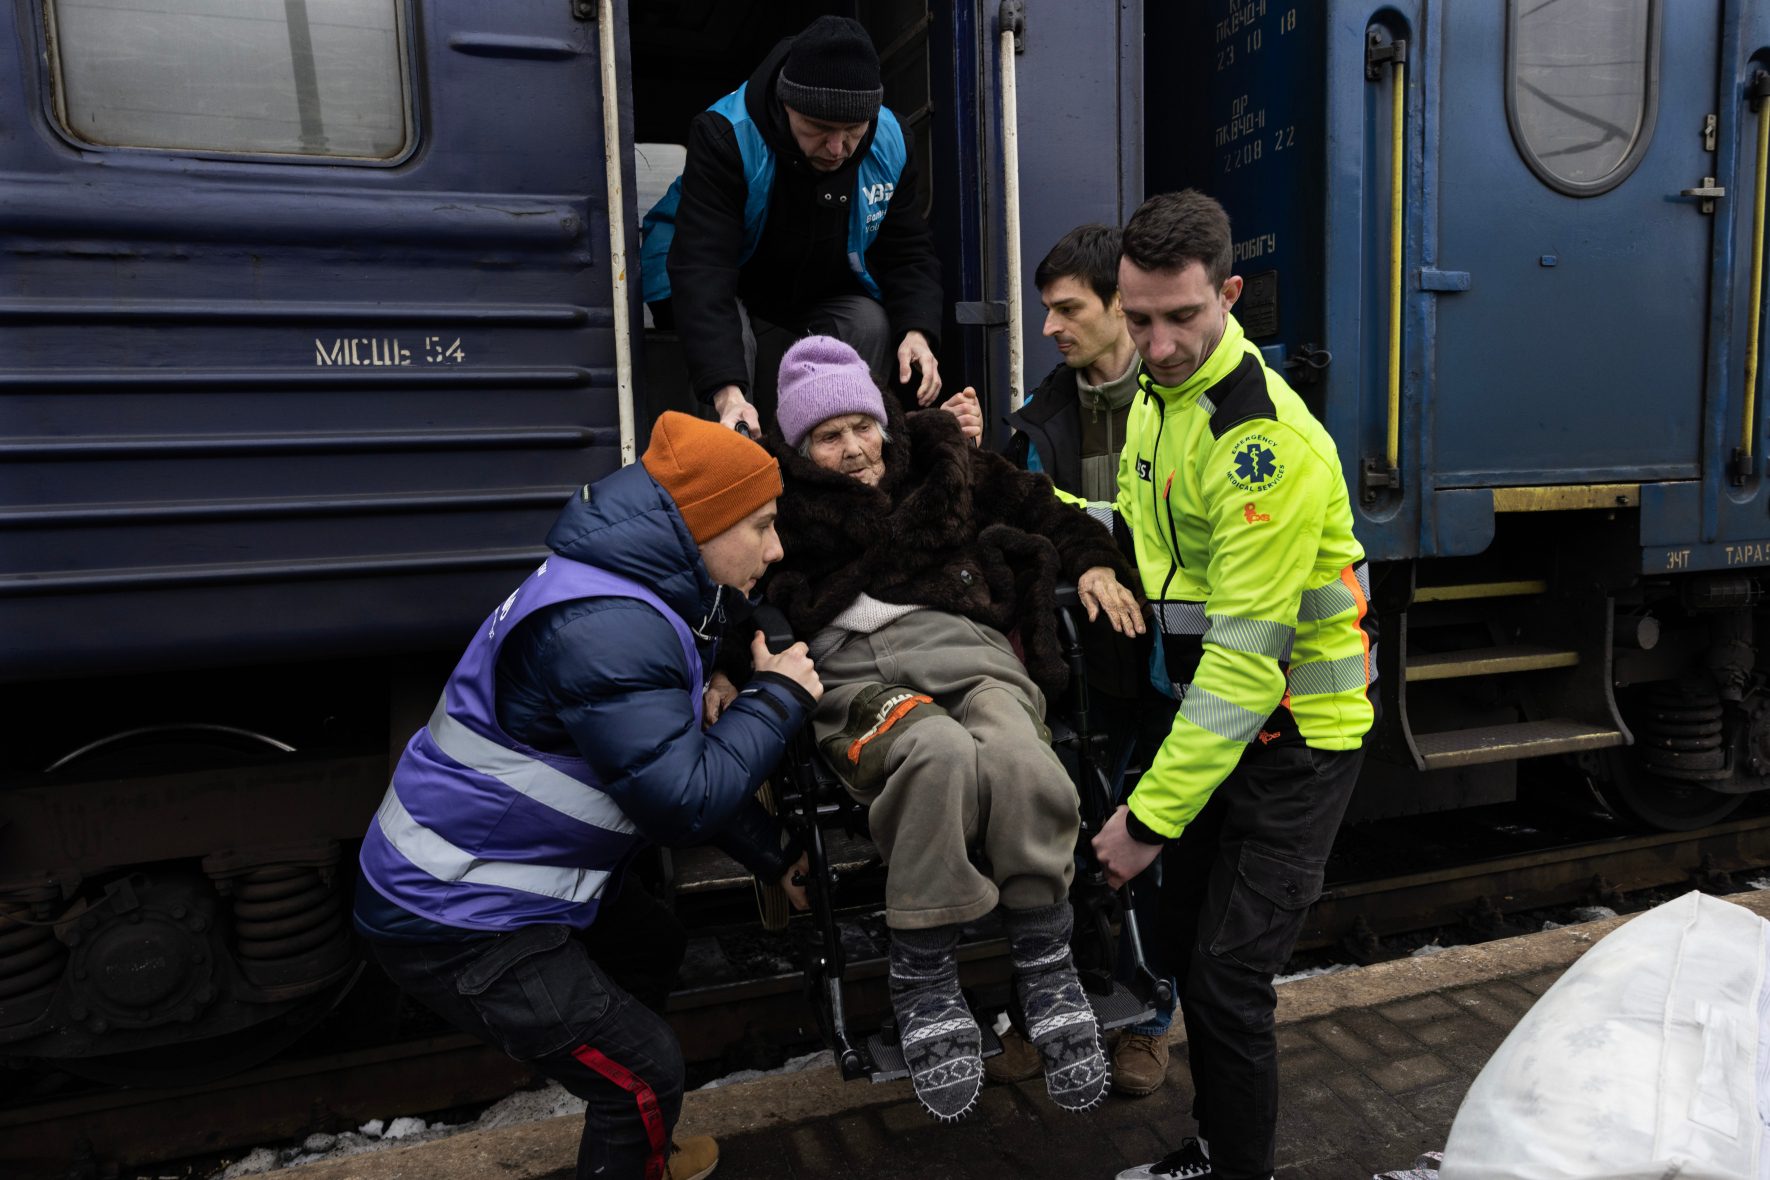 A refugee arrives at the train station in Lviv, Ukraine.